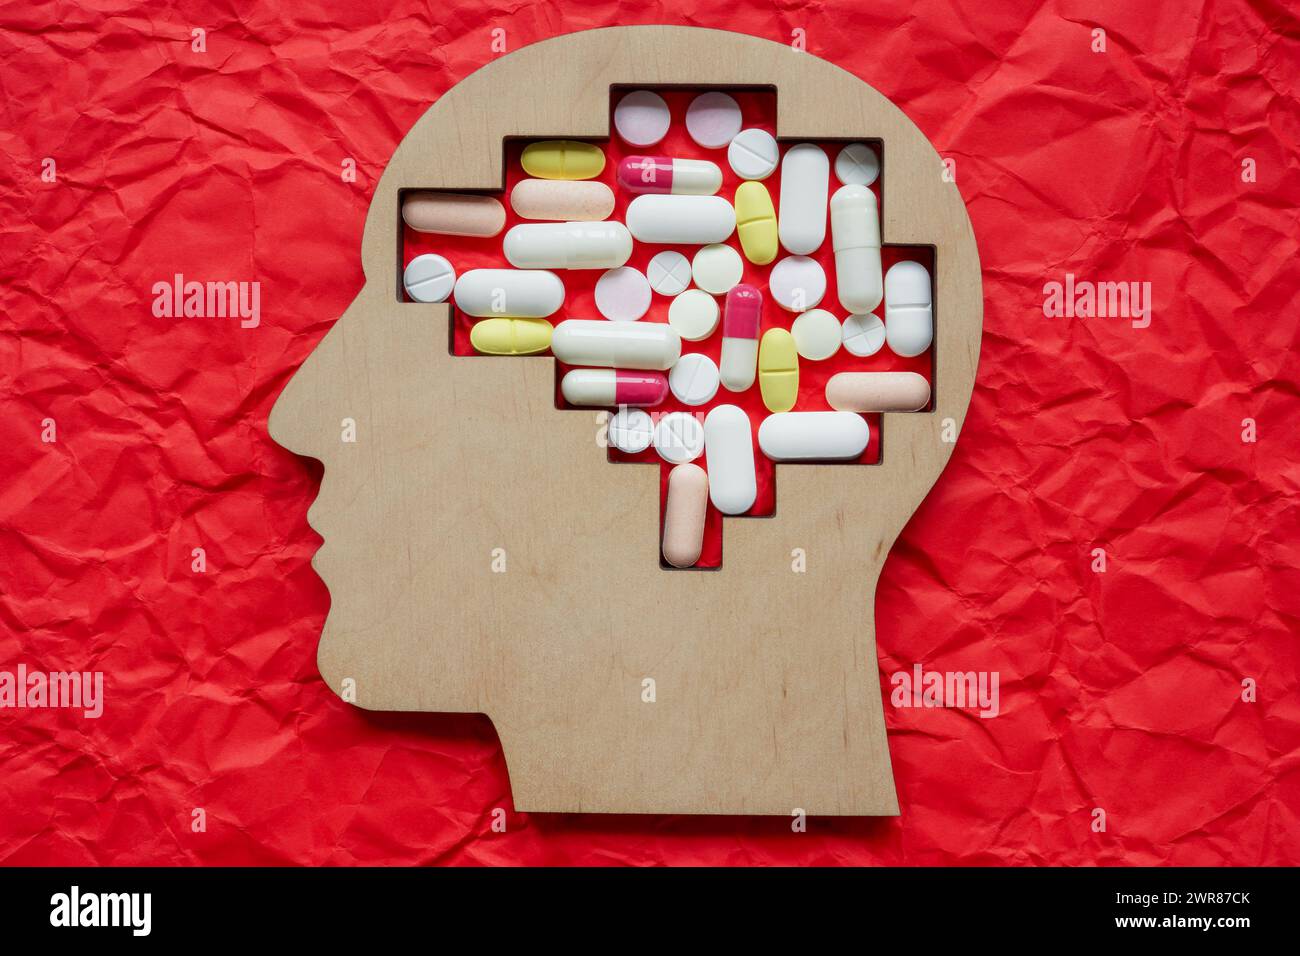 Kopf und Pillen. Behandlung psychischer Erkrankungen, Depressionen und Drogensucht. Stockfoto